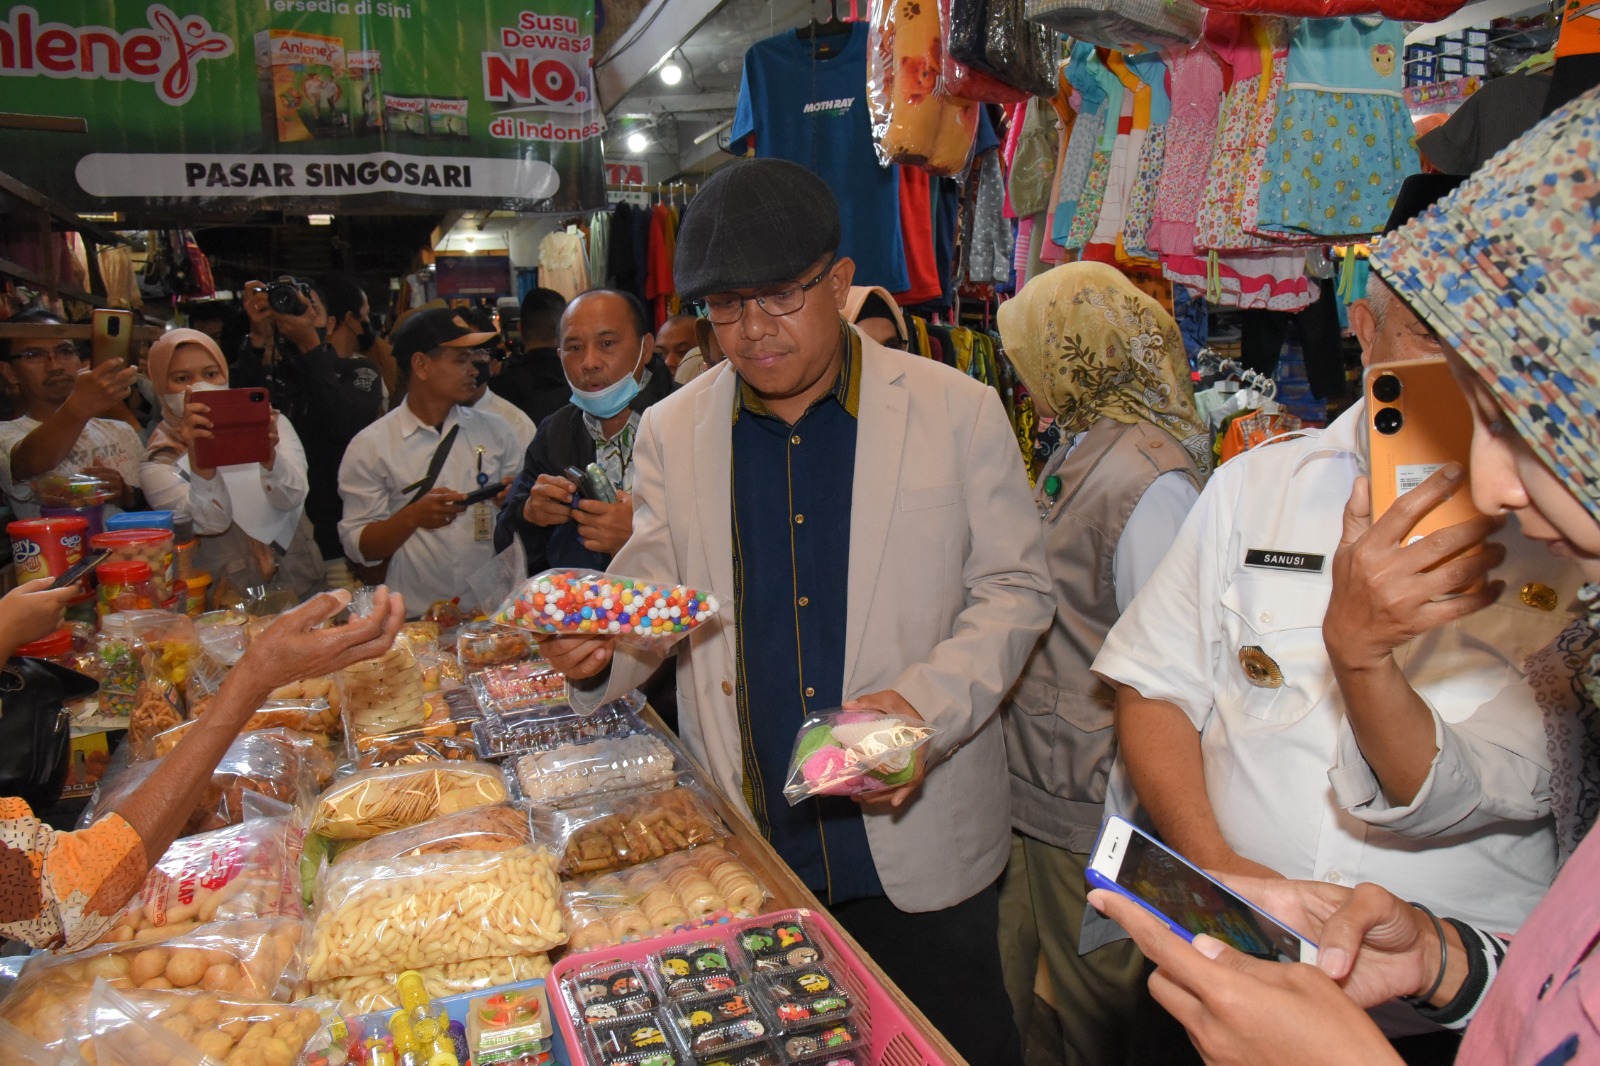 Sidak ke Pasar Singosari Malang, Komisi IX DPR Temukan Makanan Mengandung Borax